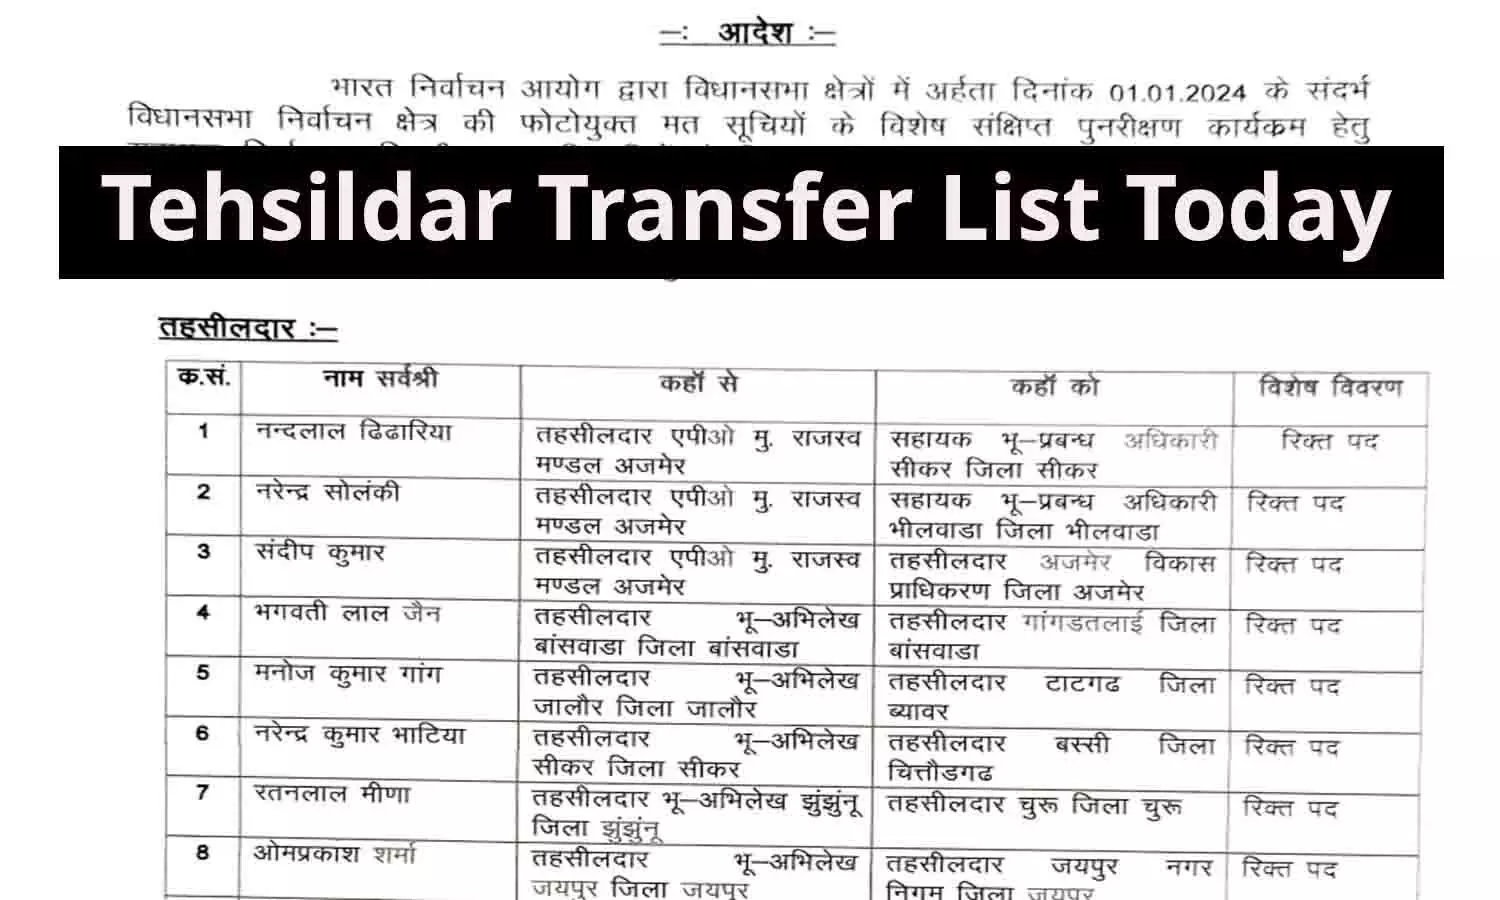 Tehsildar Transfer List Today: 24 तहसीलदार और 23 नायब तहसीलदार के तबादले, देखिए पूरी लिस्ट